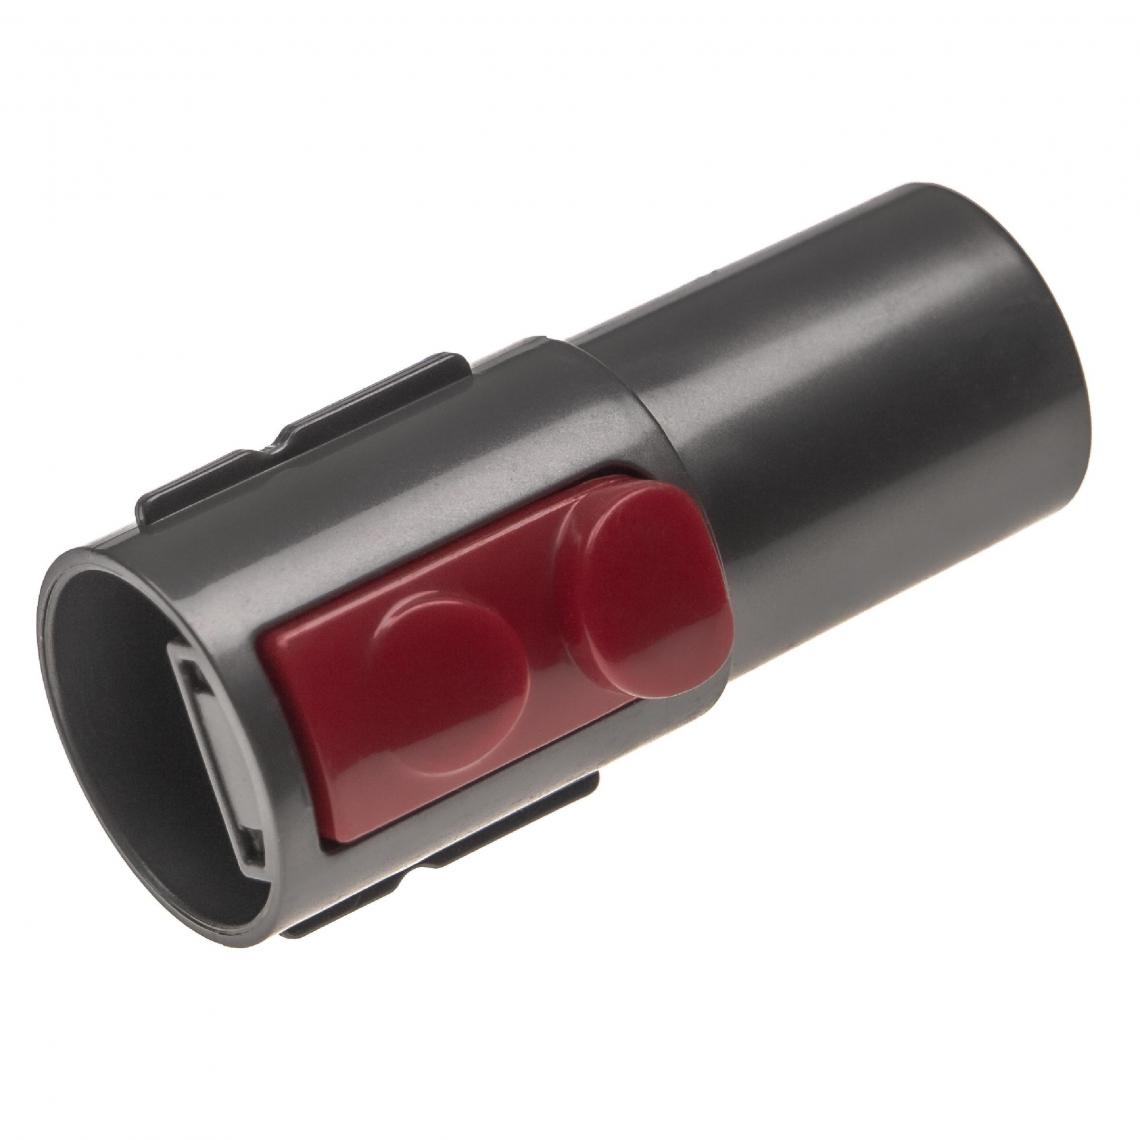 Vhbw - vhbw Adaptateur pour aspirateur connecteur de marque à raccord 32mm remplacement pour Dyson 968235-1 - noir / rouge, plastique - Accessoire entretien des sols